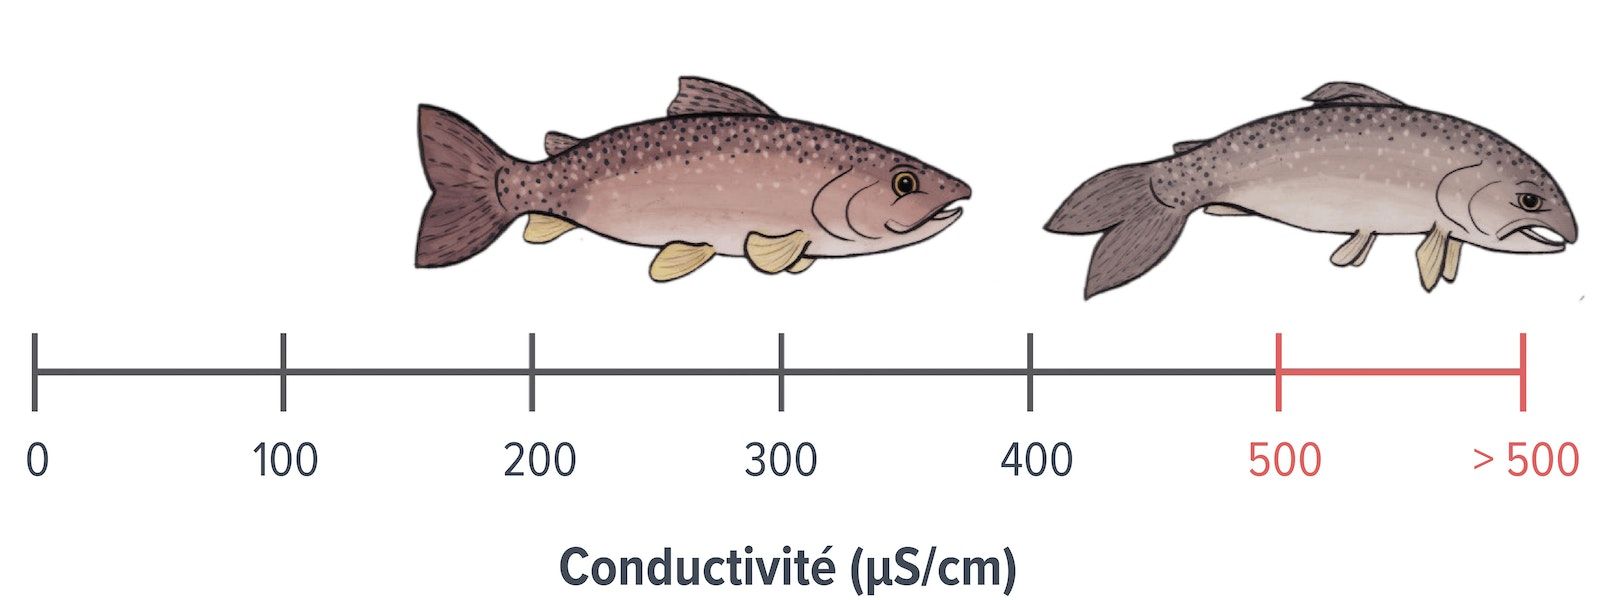 Échelle de conductivité en microsiemens par centimètre, montrant des poissons à différents niveaux de conductivité. Un poisson sain et heureux est indiqué entre 100 et 400 microsiemens par centimètre et un poisson malsain et triste à plus de 400 microsiemens par centimètre.